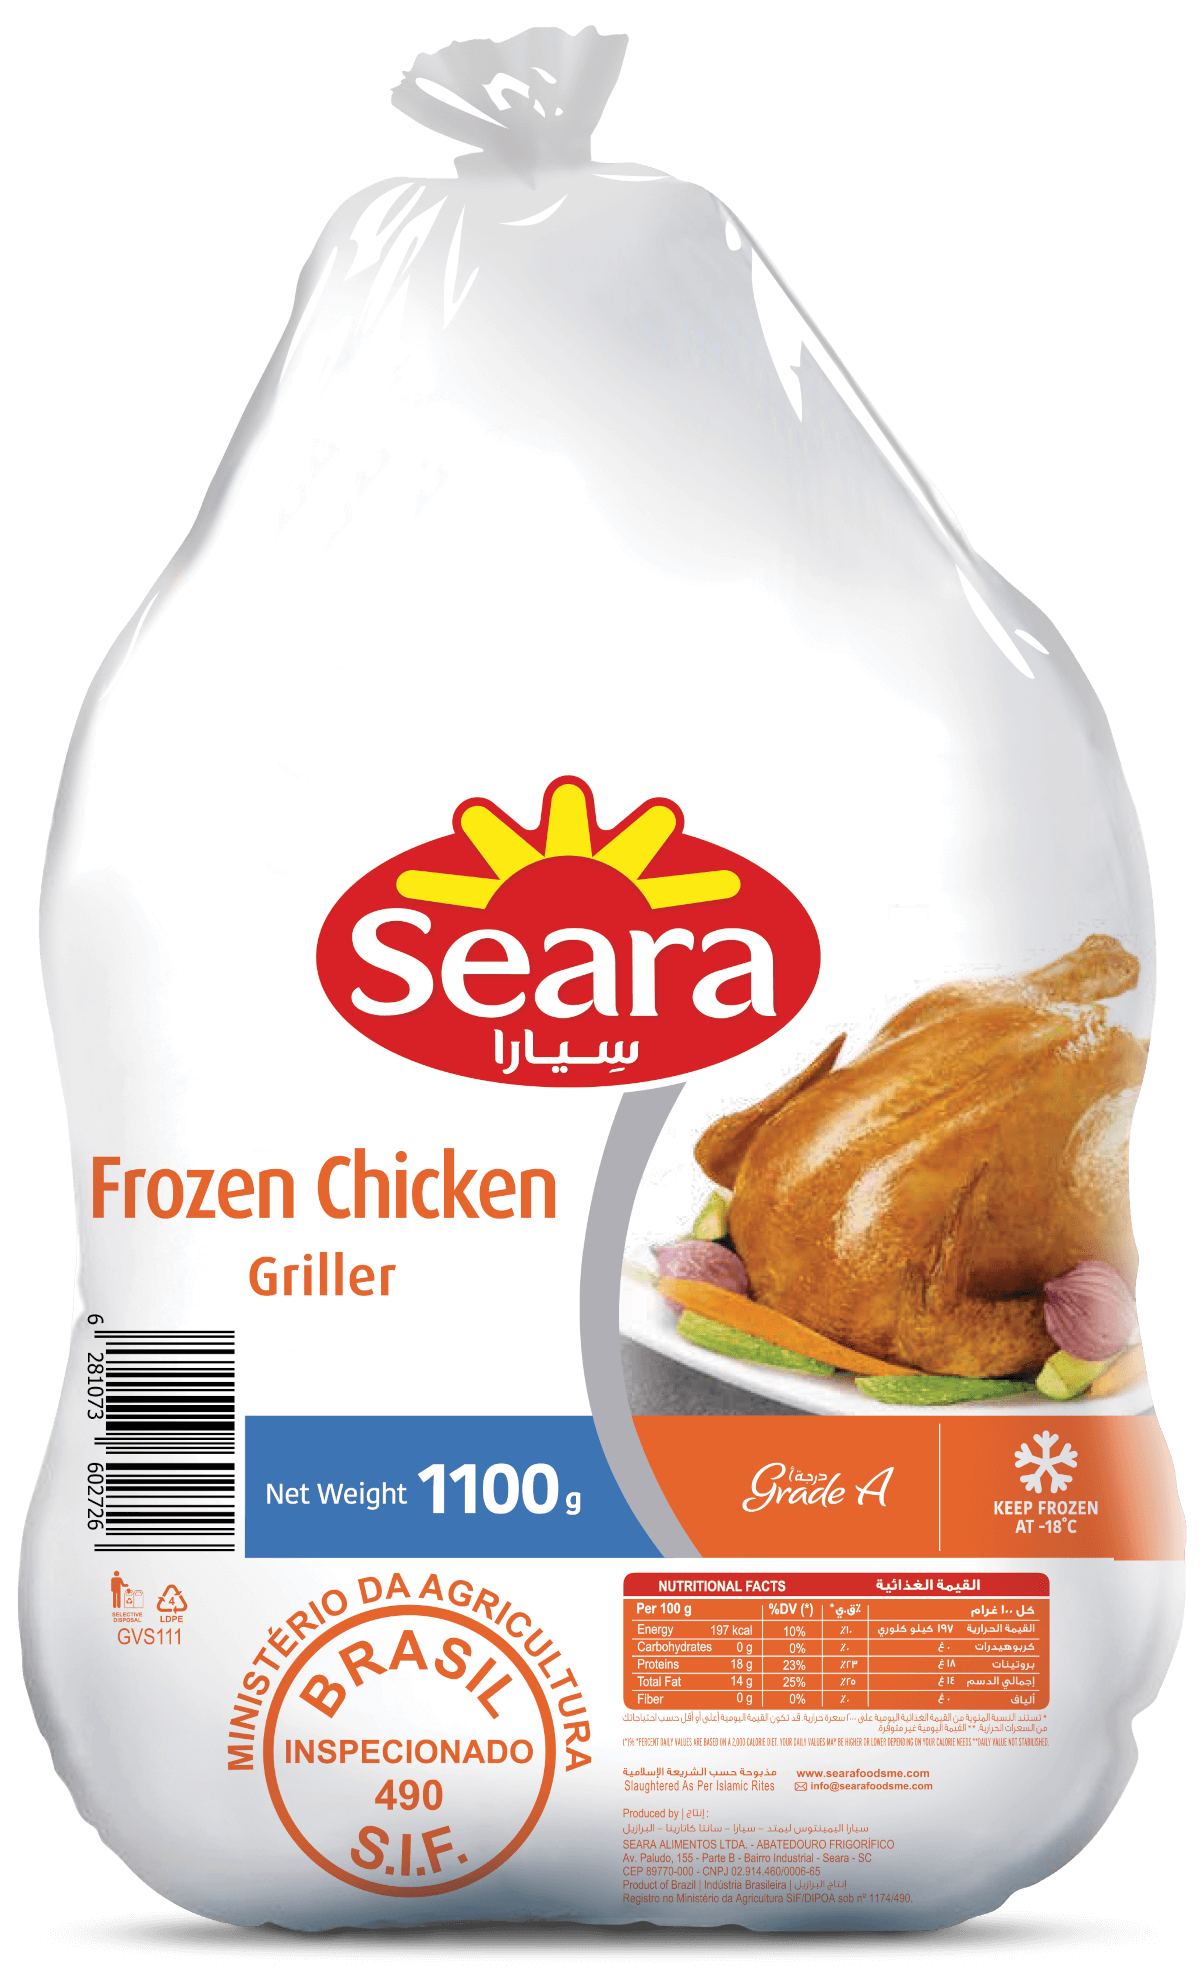 Seara Frozen Chicken Griller 1100G